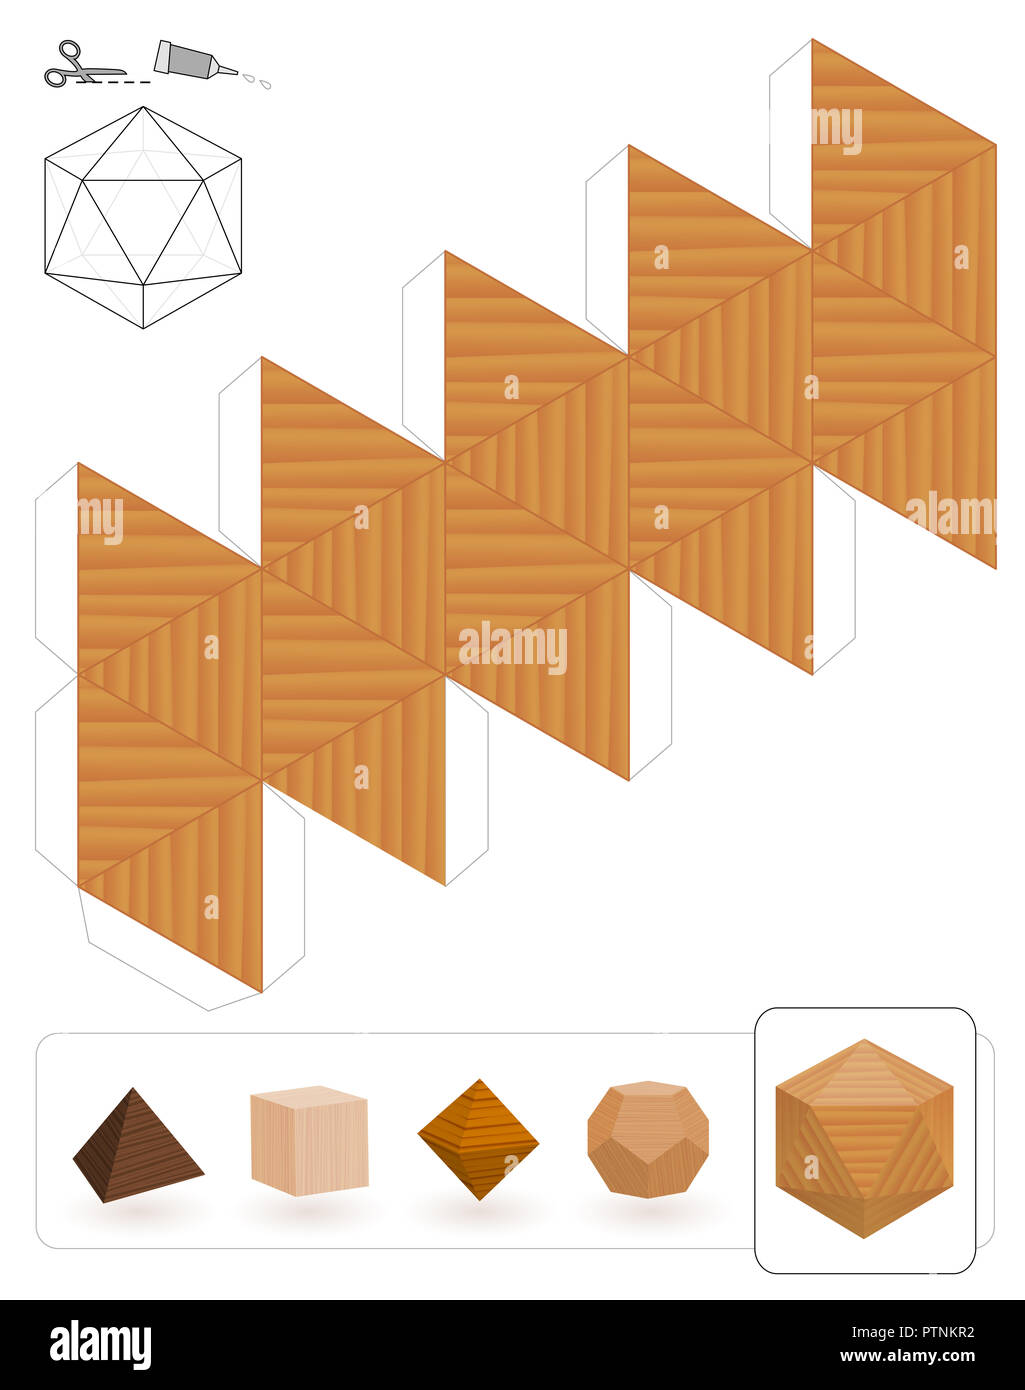 Solides de Platon. Modèle d'un icosaèdre avec texture en bois pour faire un modèle 3D hors du triangle net. Banque D'Images